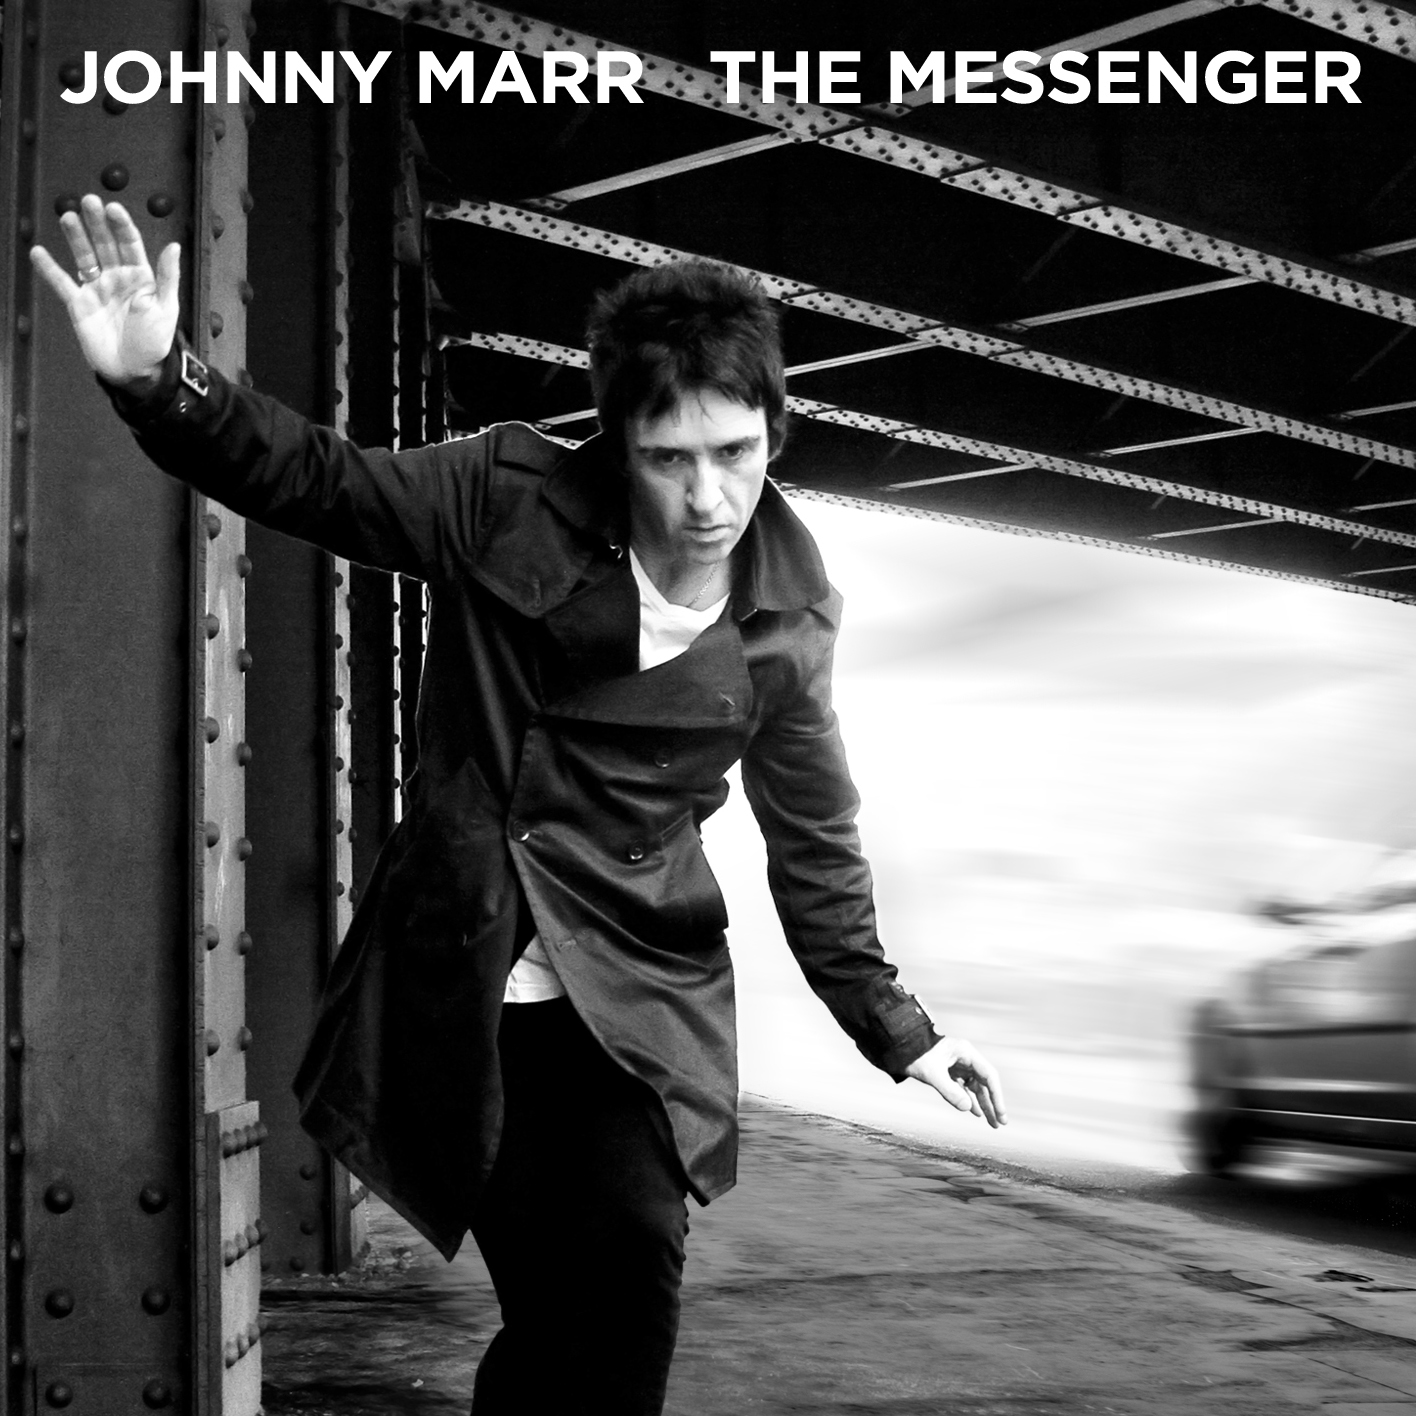 Listen: Johnny Marr streams new album ‘The Messenger’ in full online ...